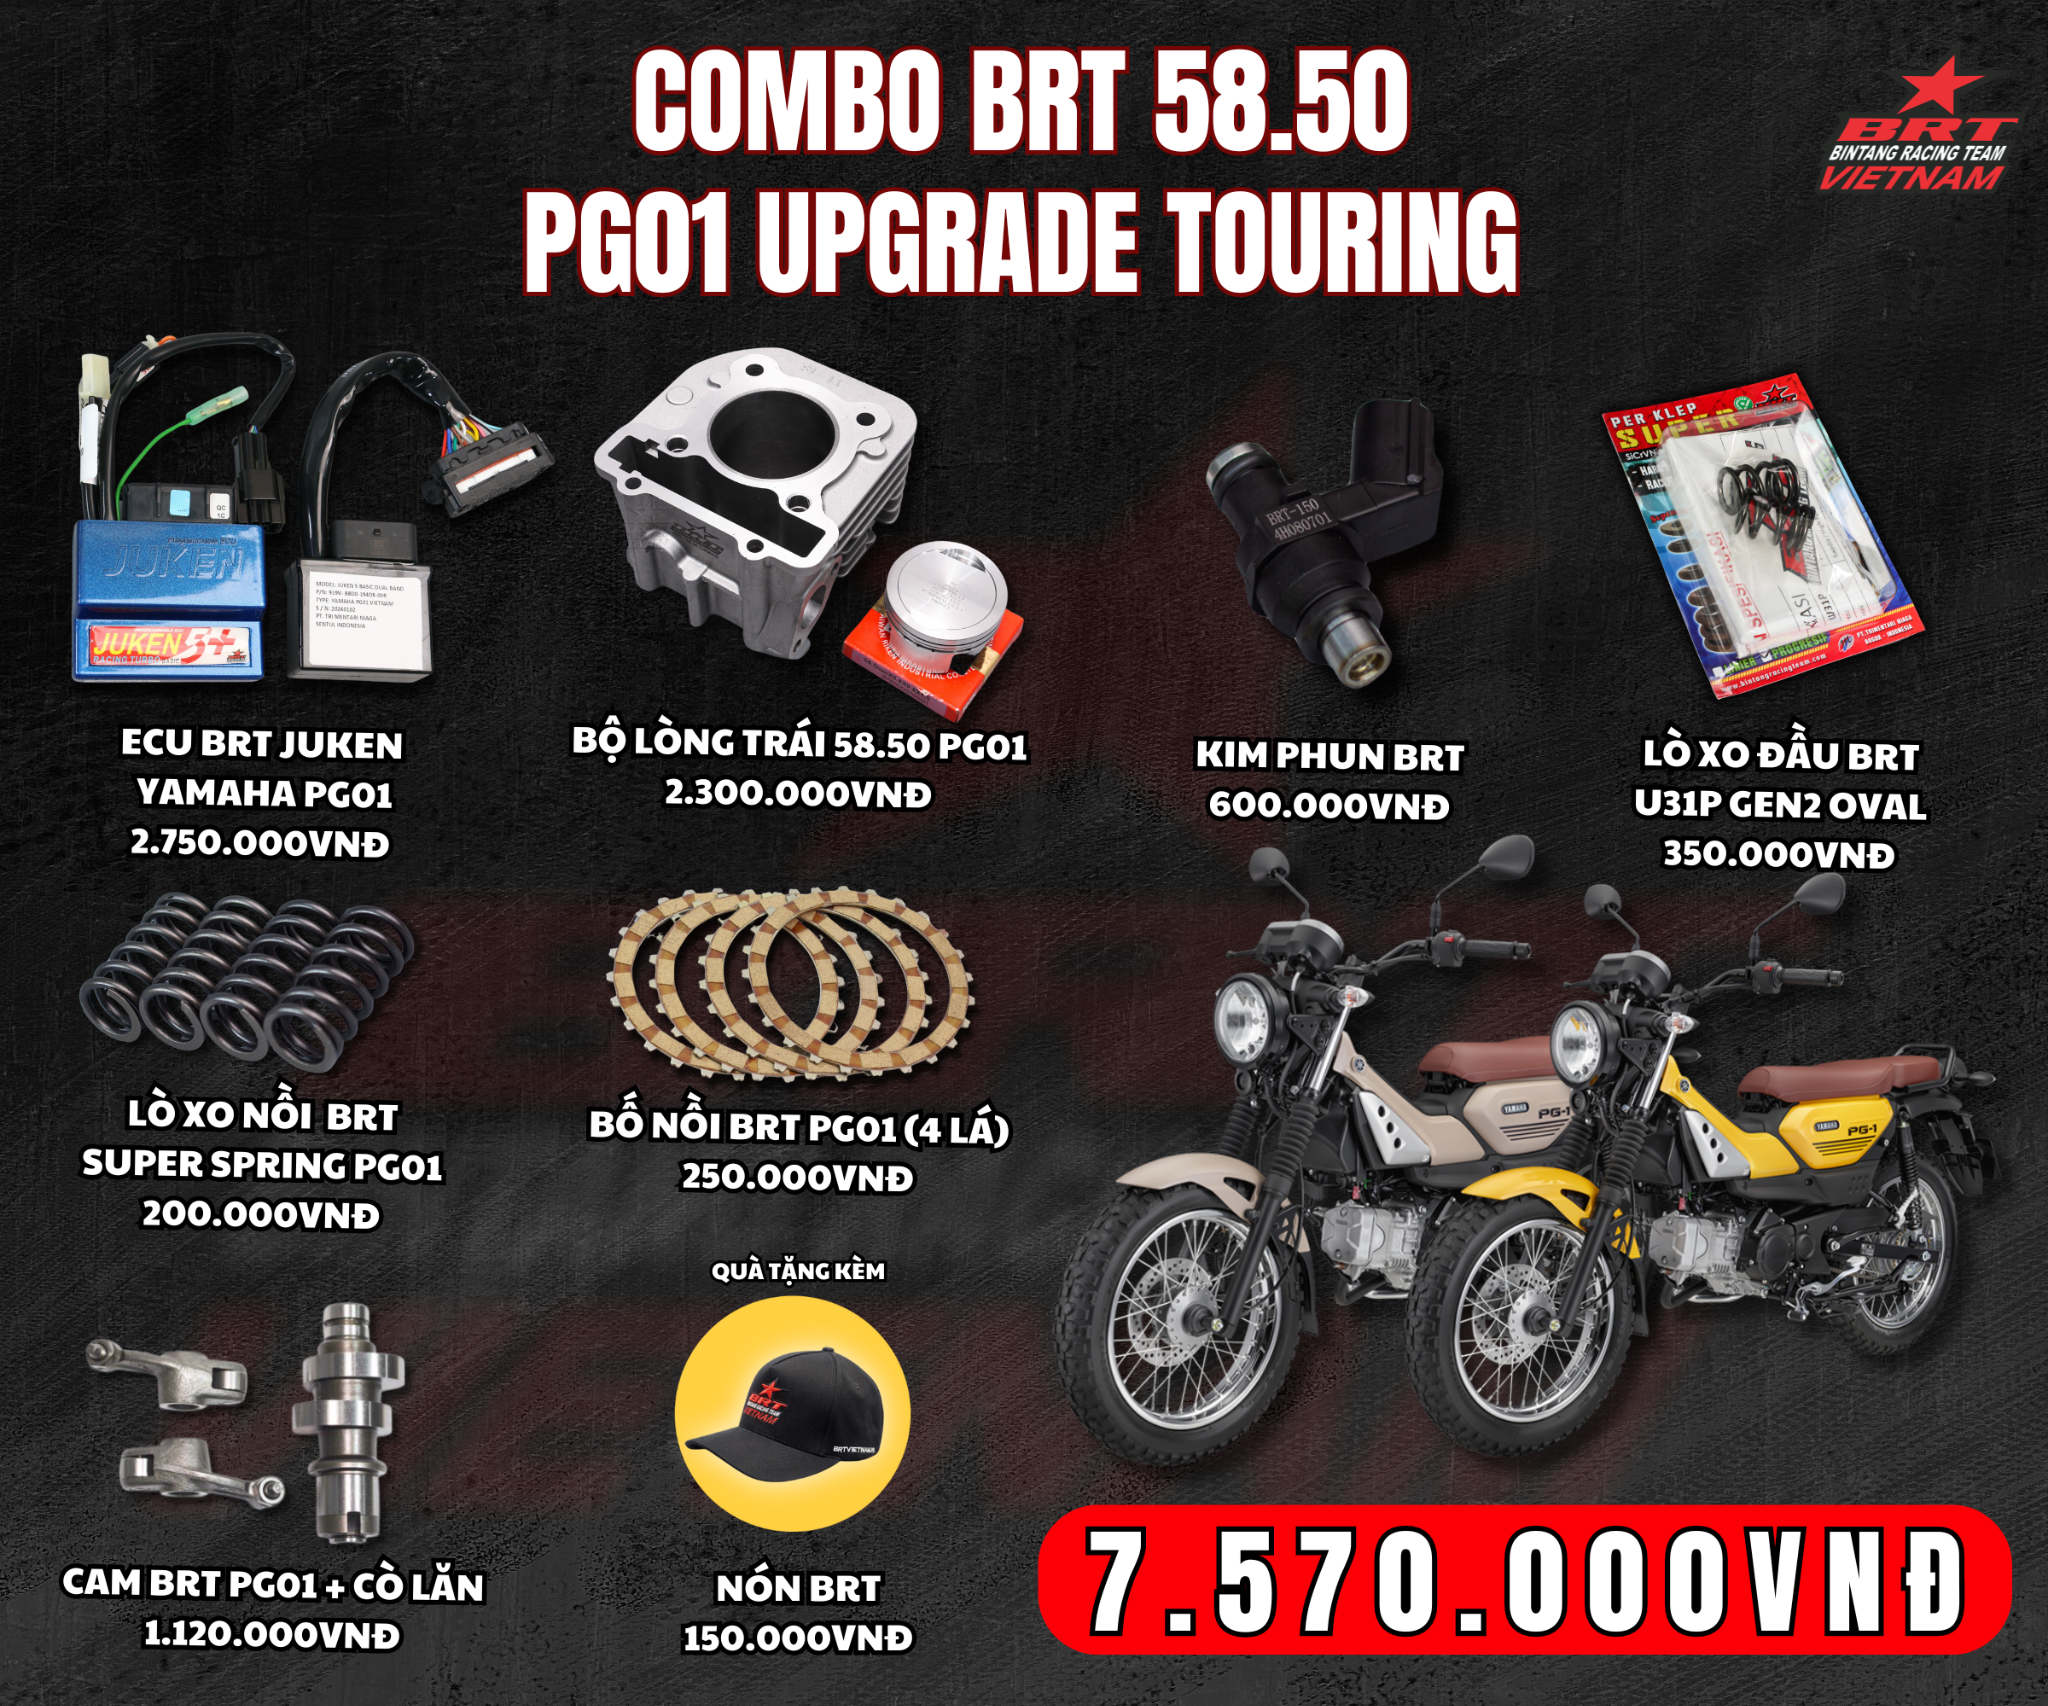  COMBO BRT 58.50 PG01 UPGRADE TOURING 